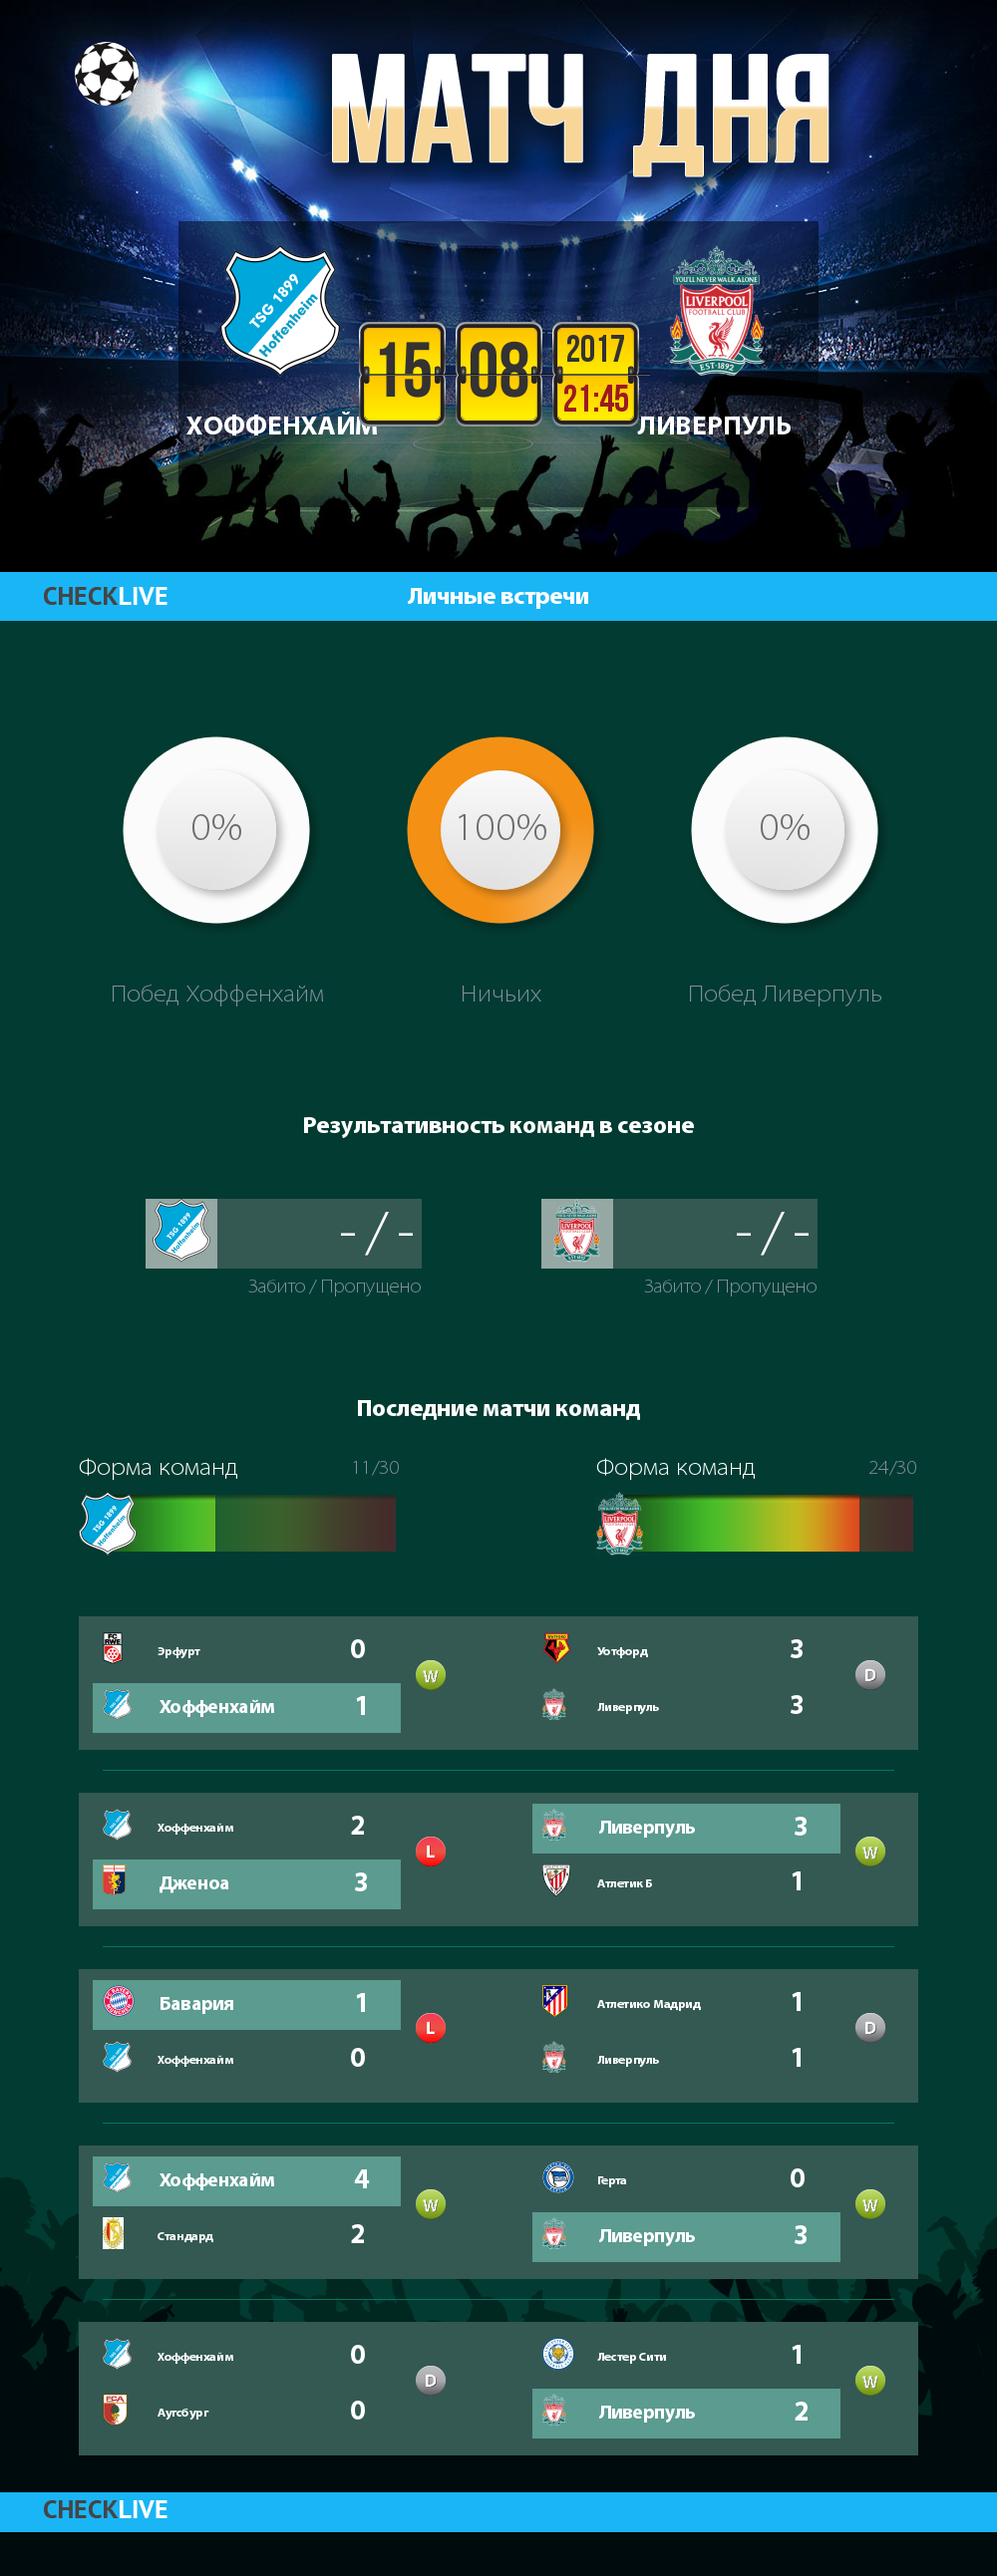 Инфографика Хоффенхайм и Ливерпуль матч дня 15.08.2017